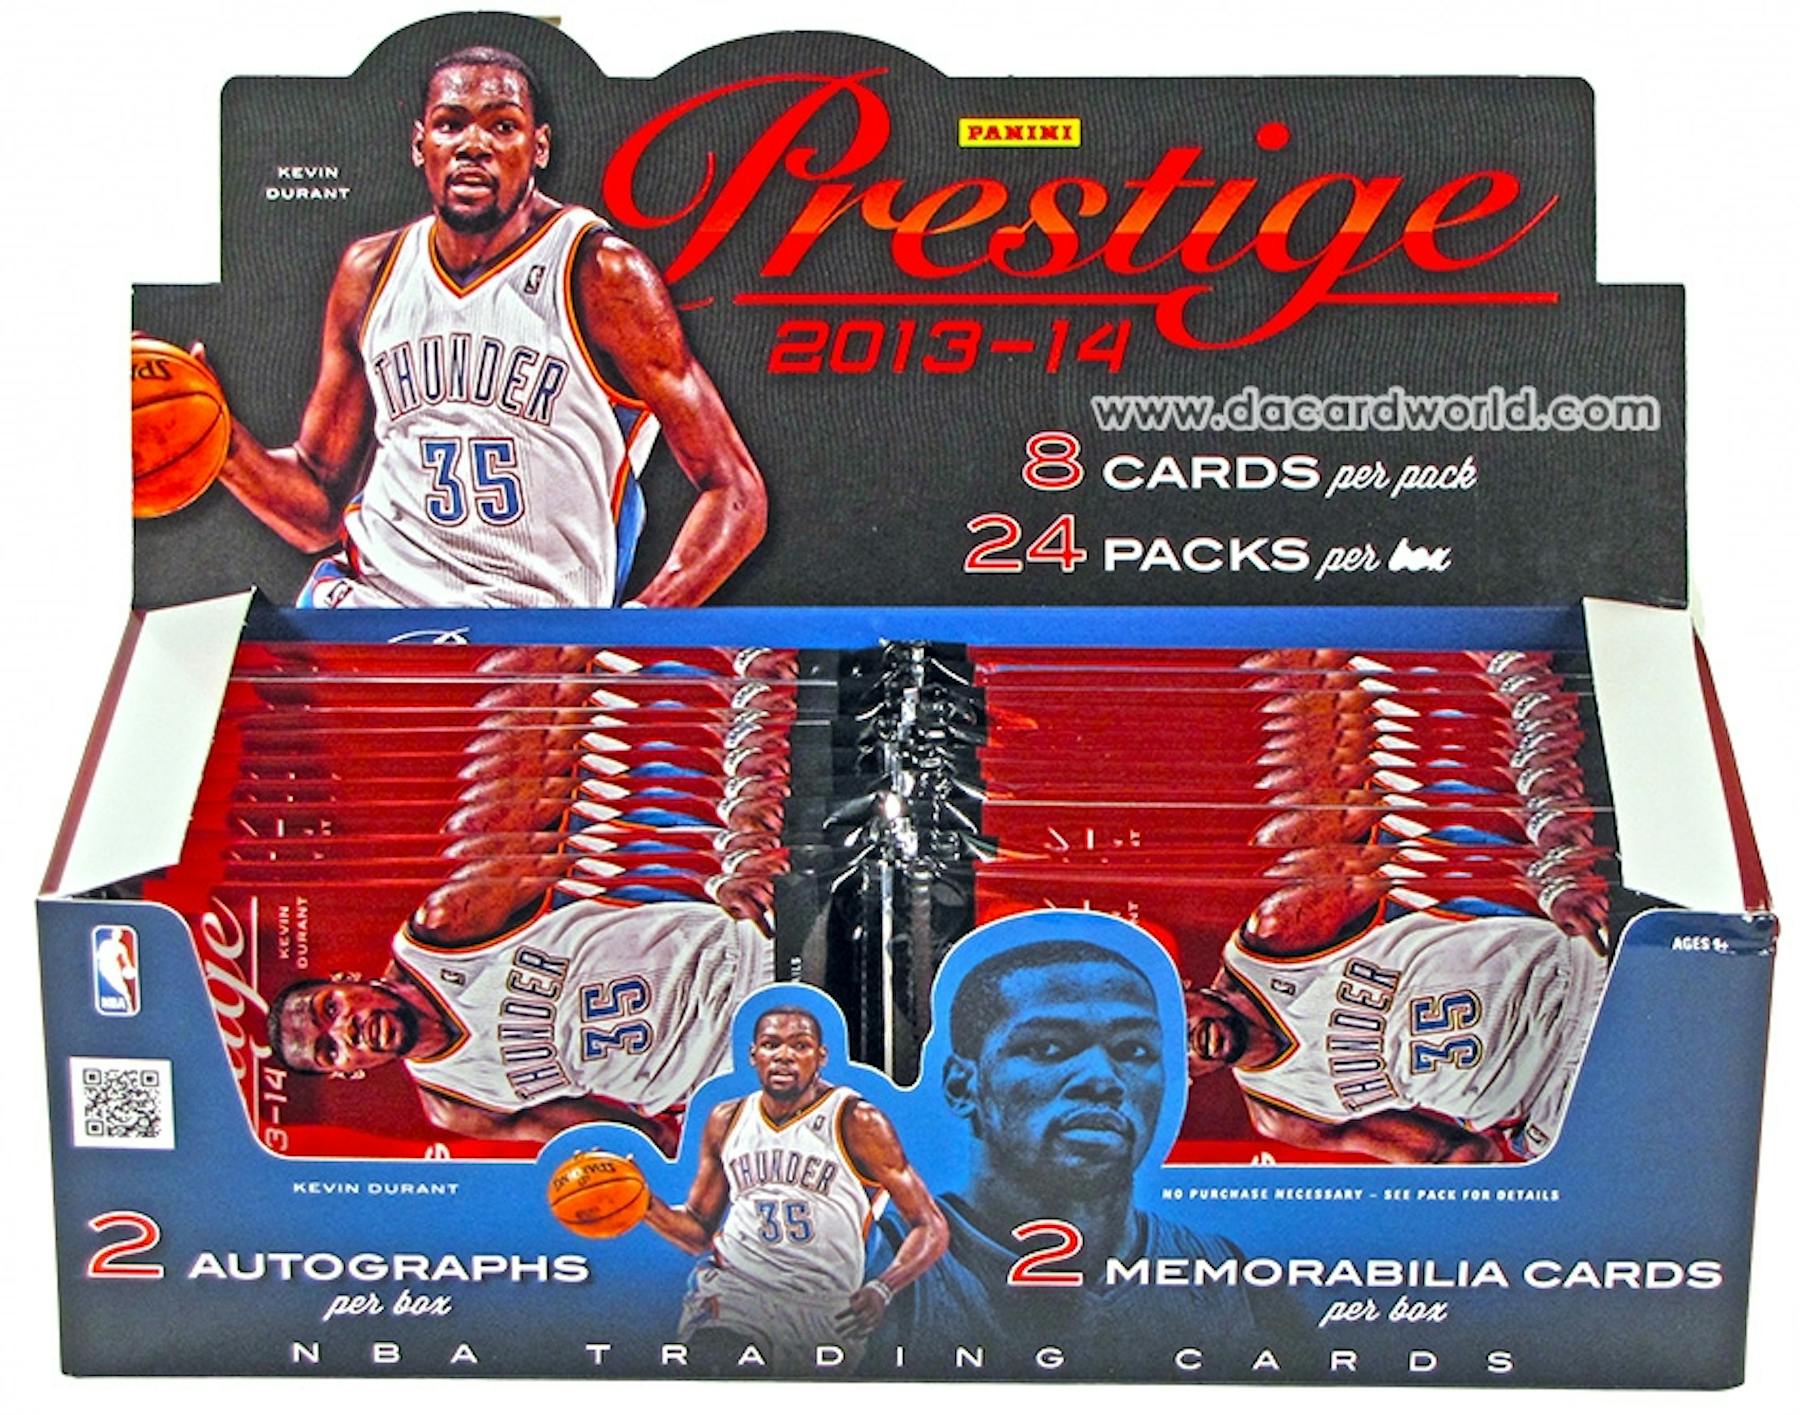 2013/14 Panini Prestige Basketball Hobby Box | DA Card World1800 x 1415